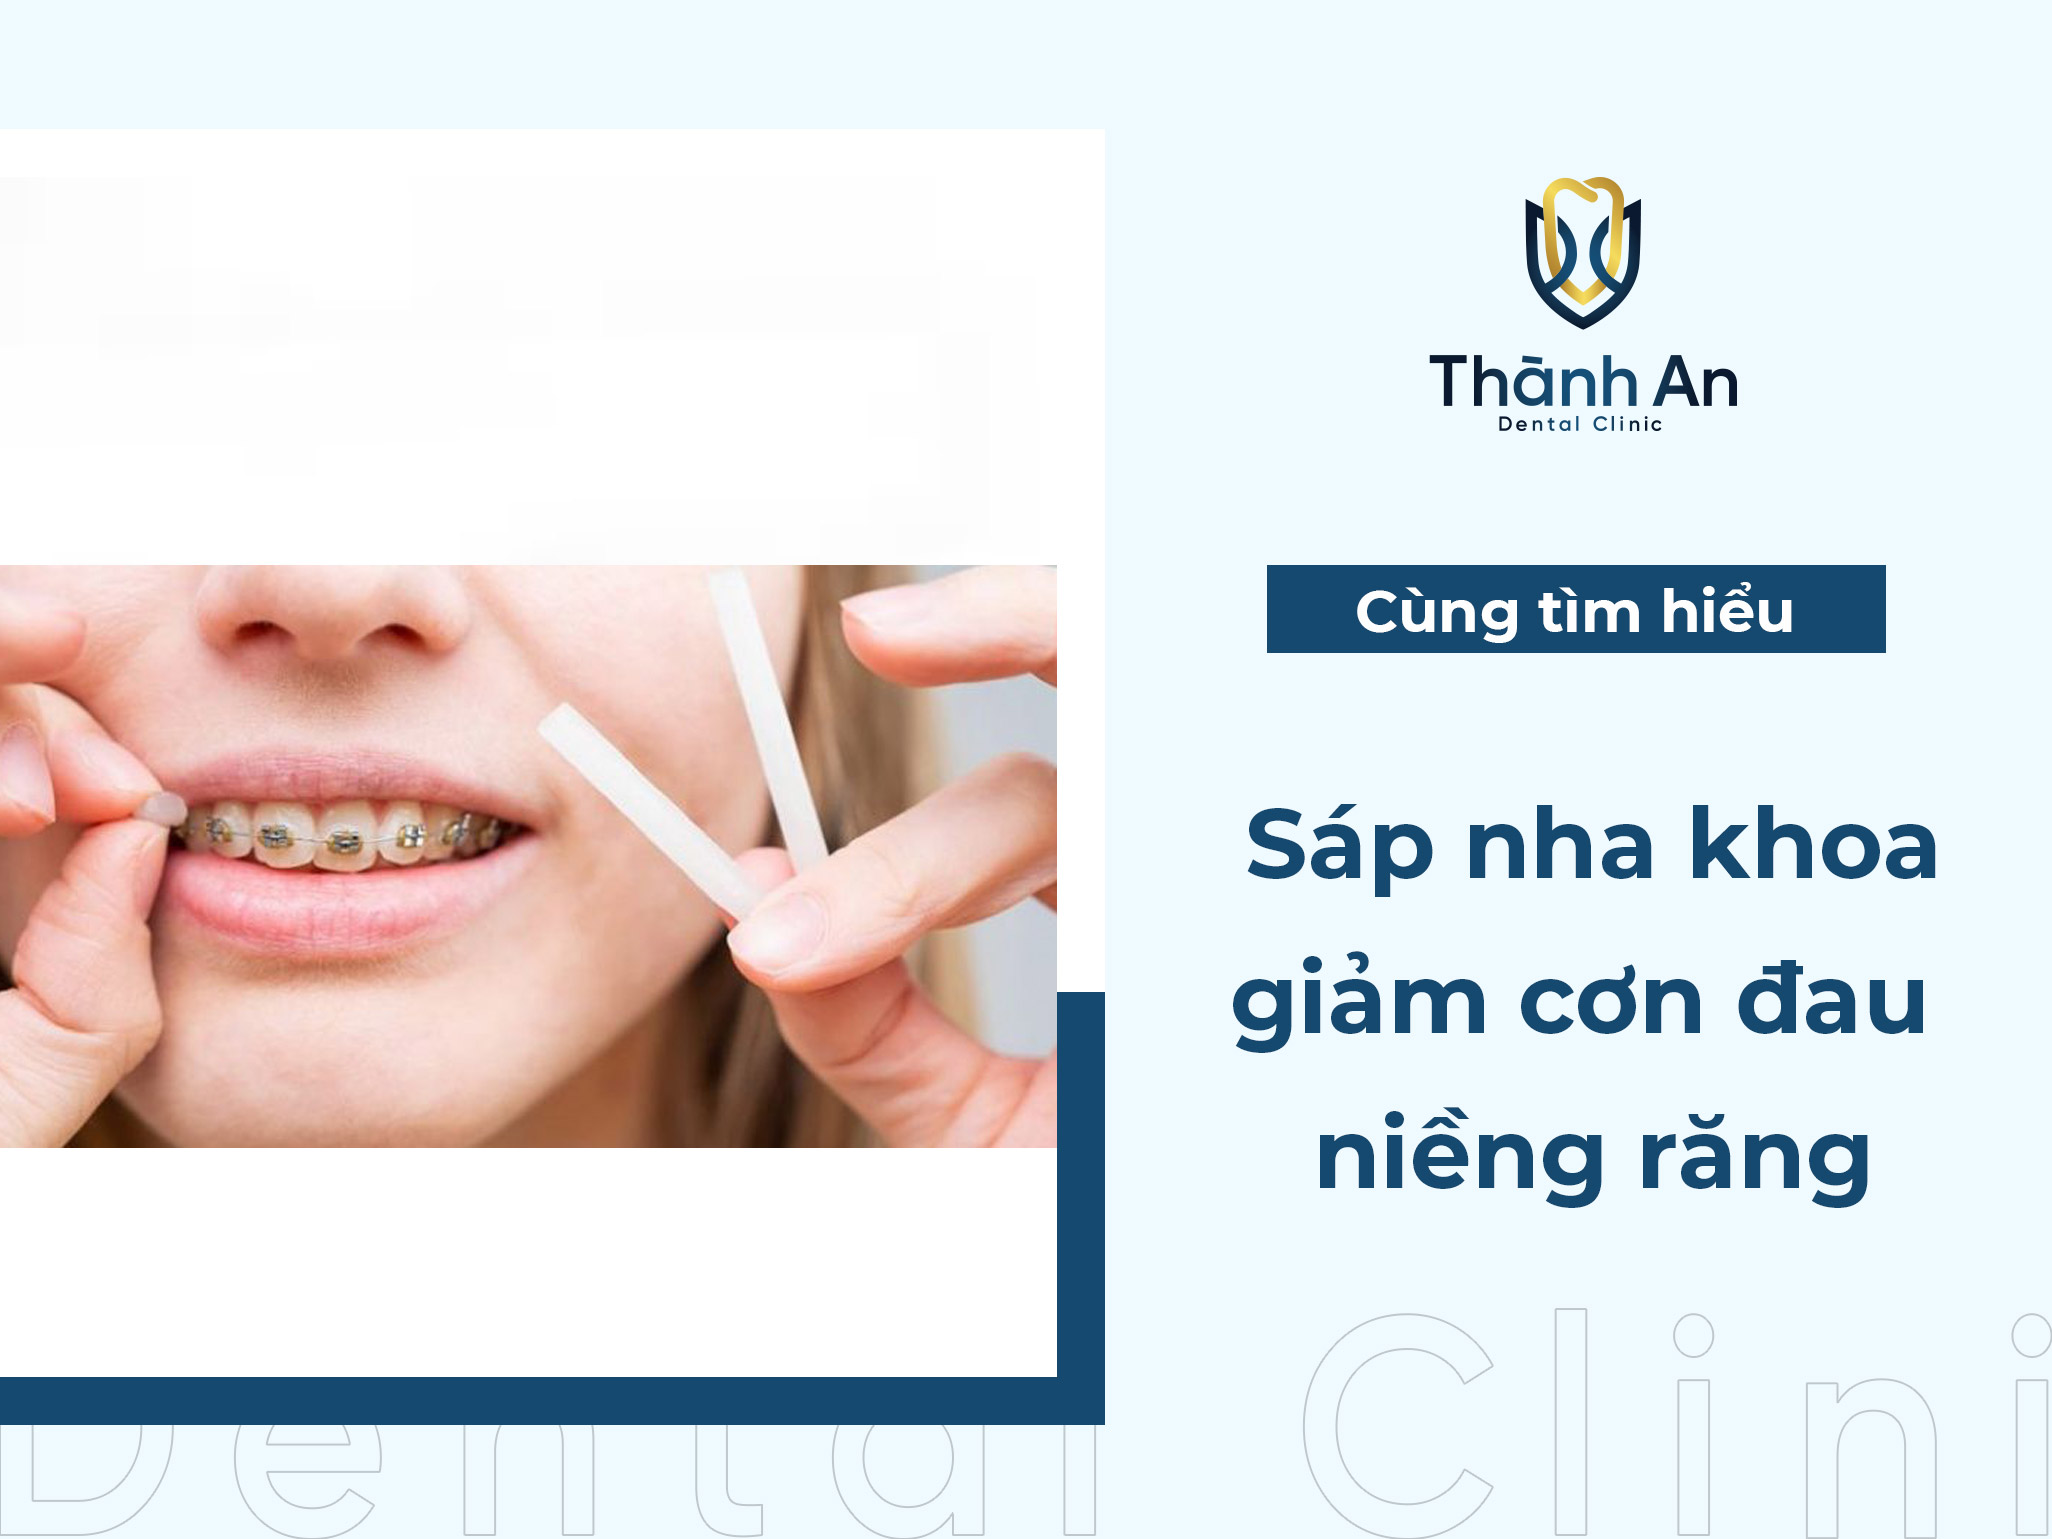 Sáp nha khoa - Dùng đúng cách, giảm cơn đau niềng răng hiệu quả